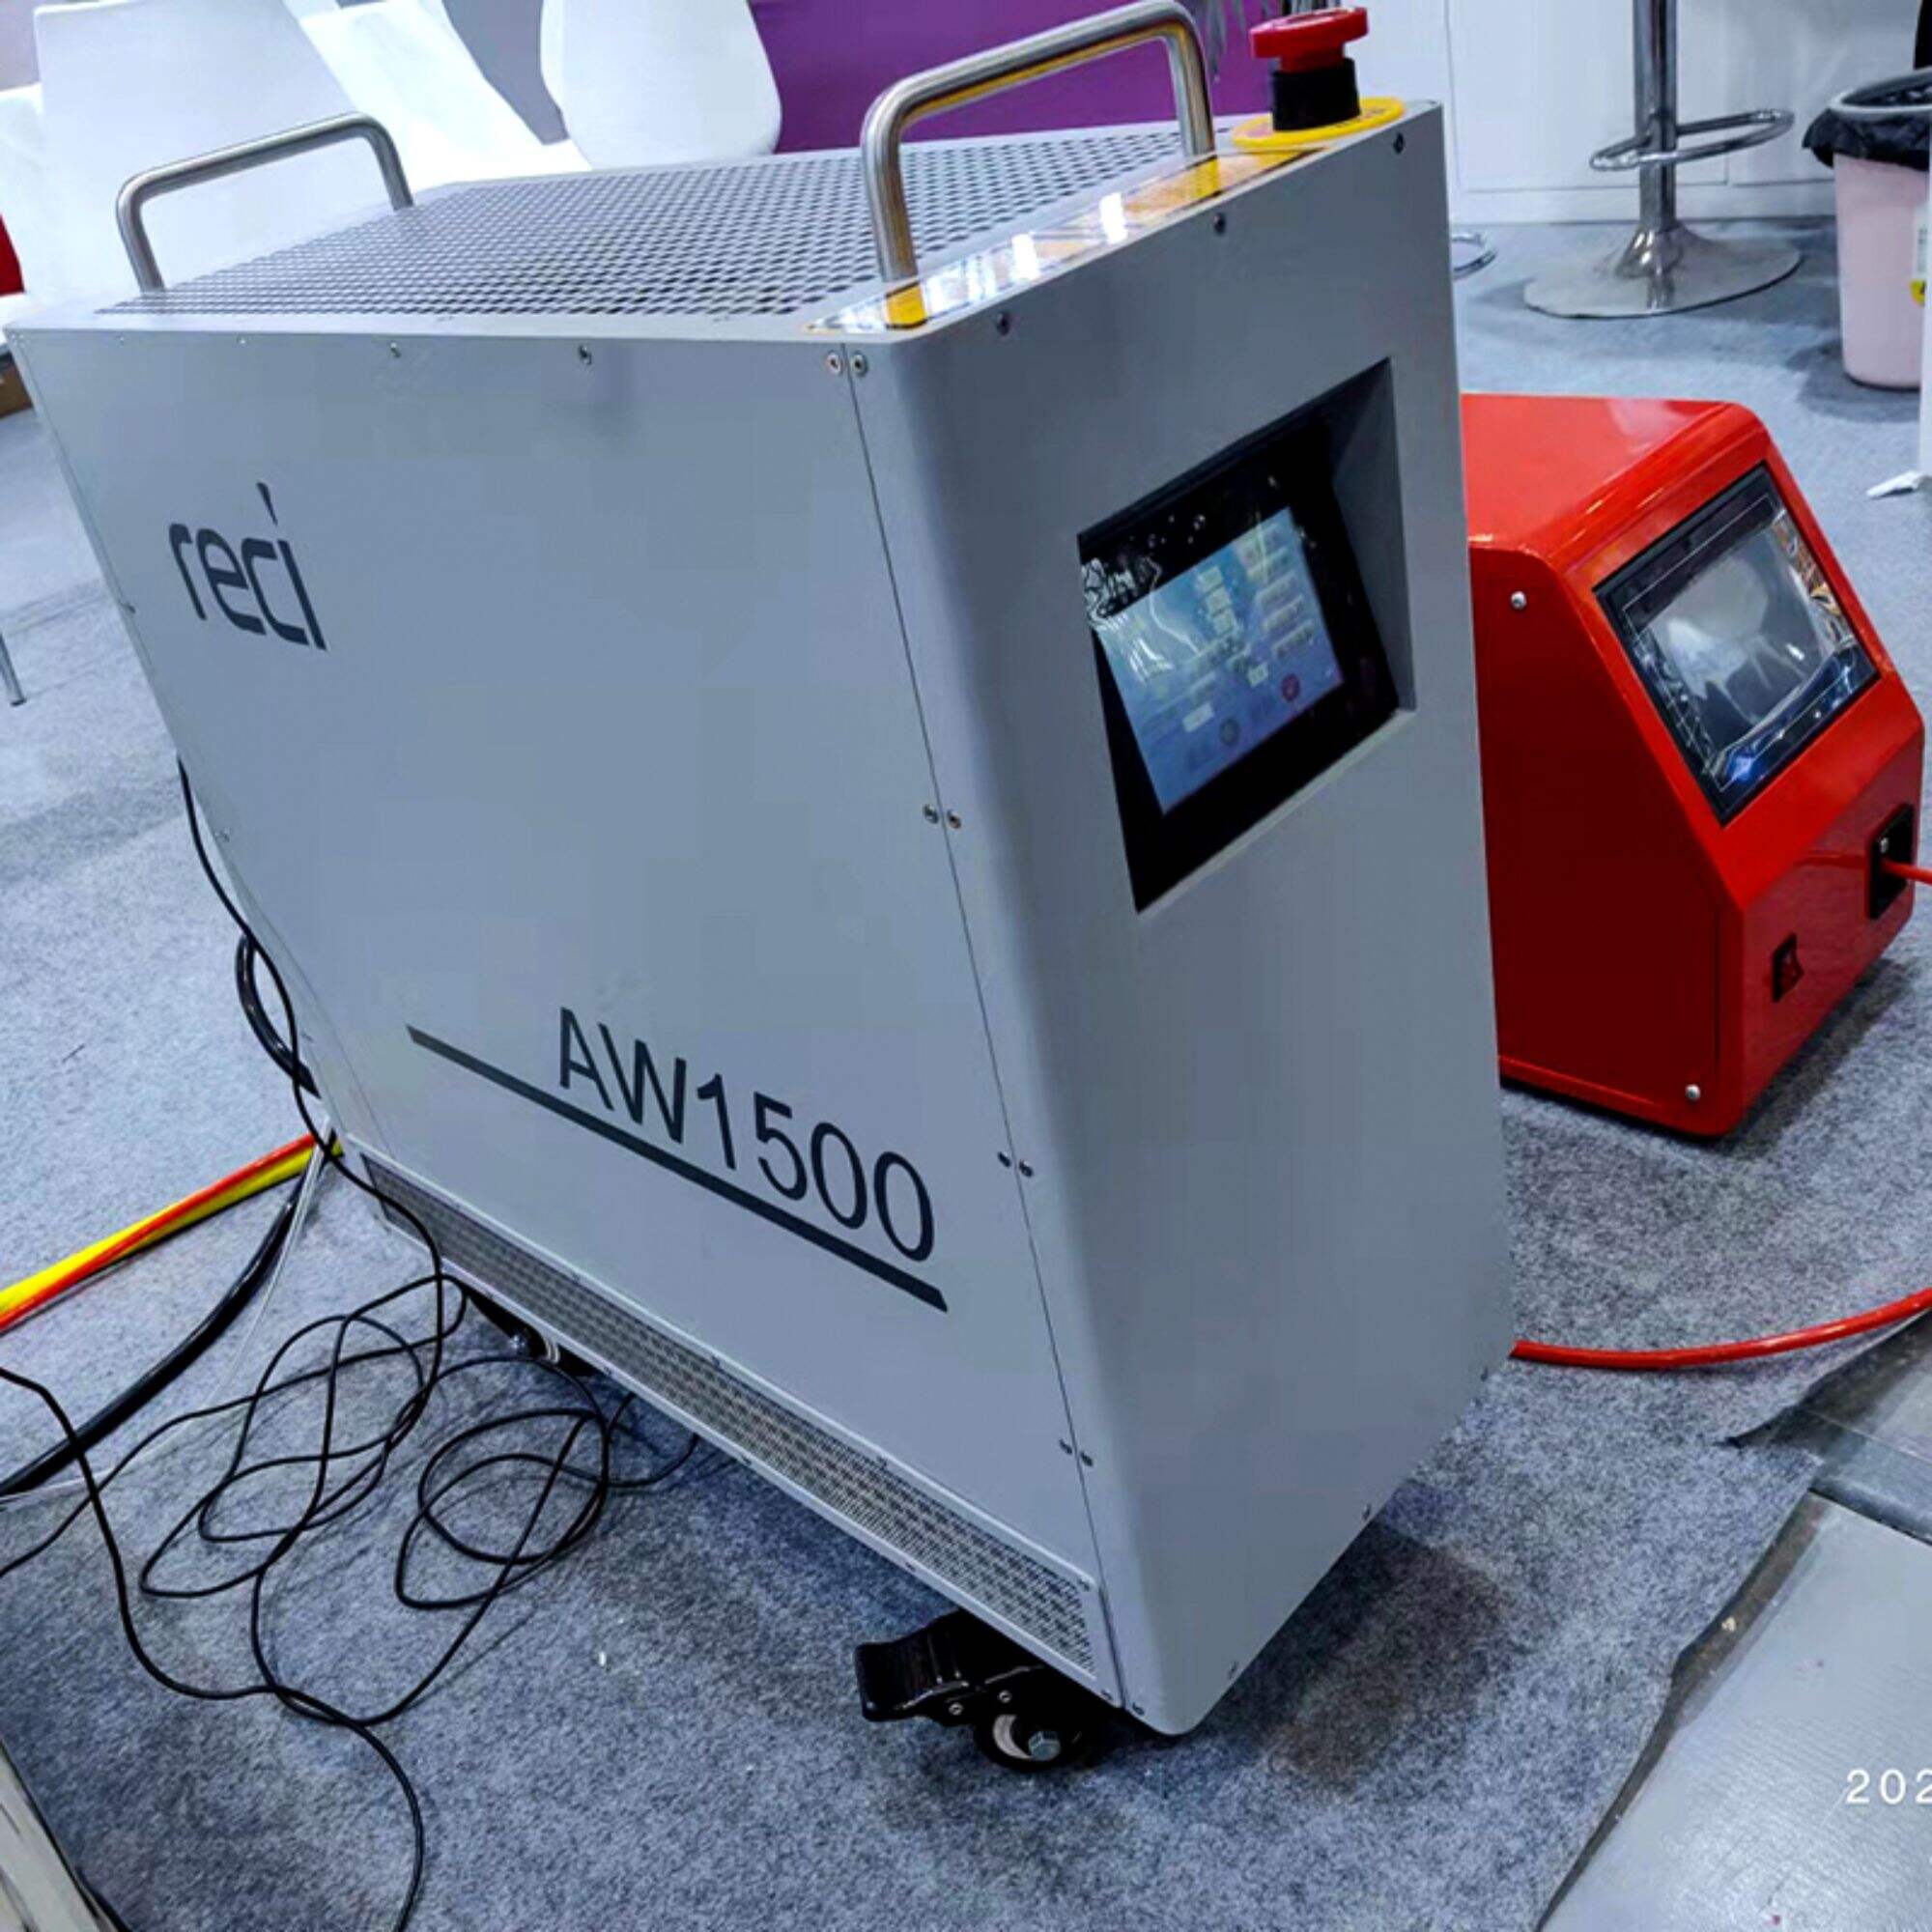 Ruční vláknový laserový svařovací stroj Reci 1500W